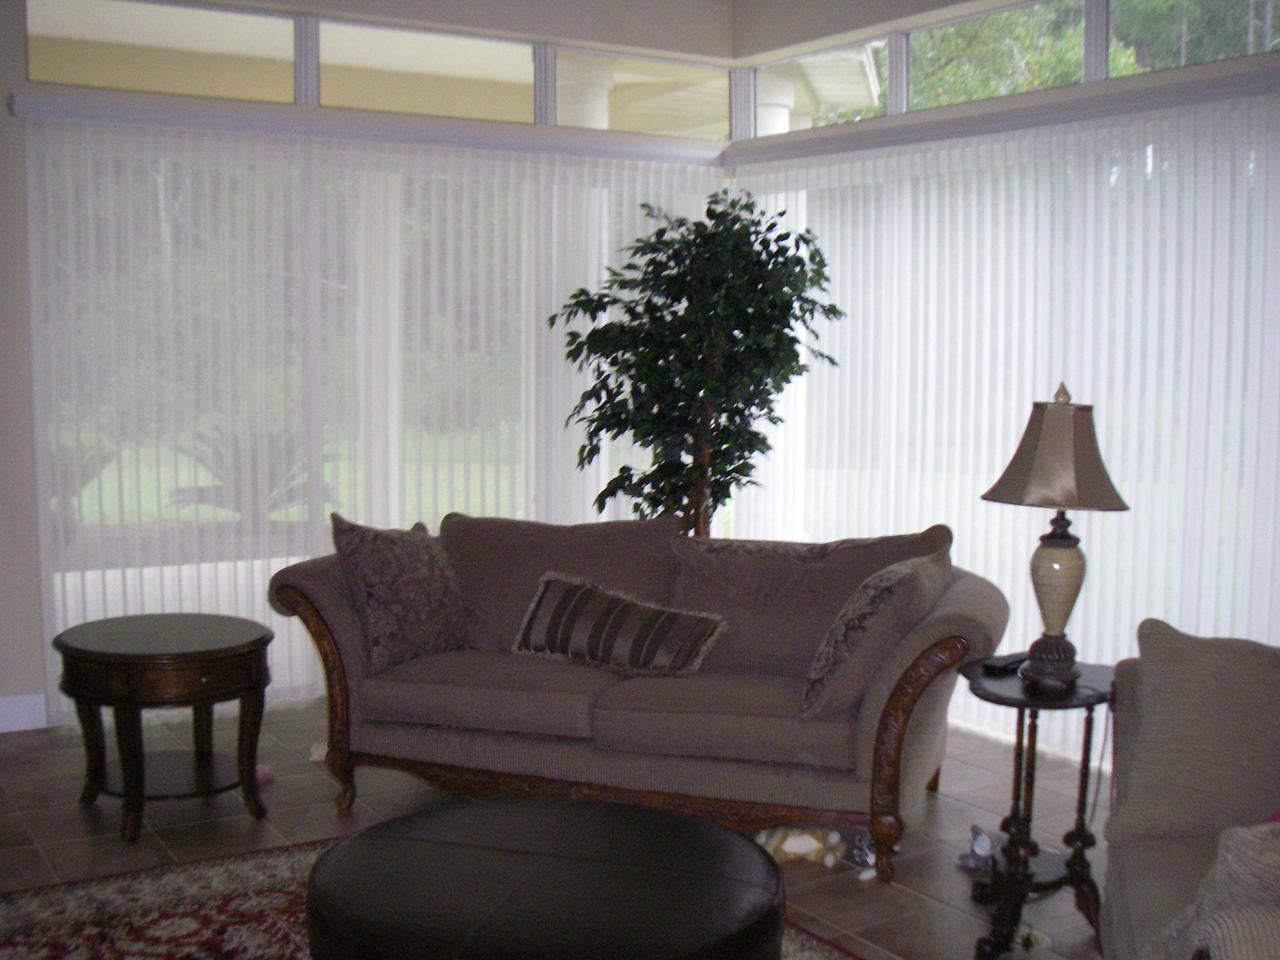 Luminette panels in living room